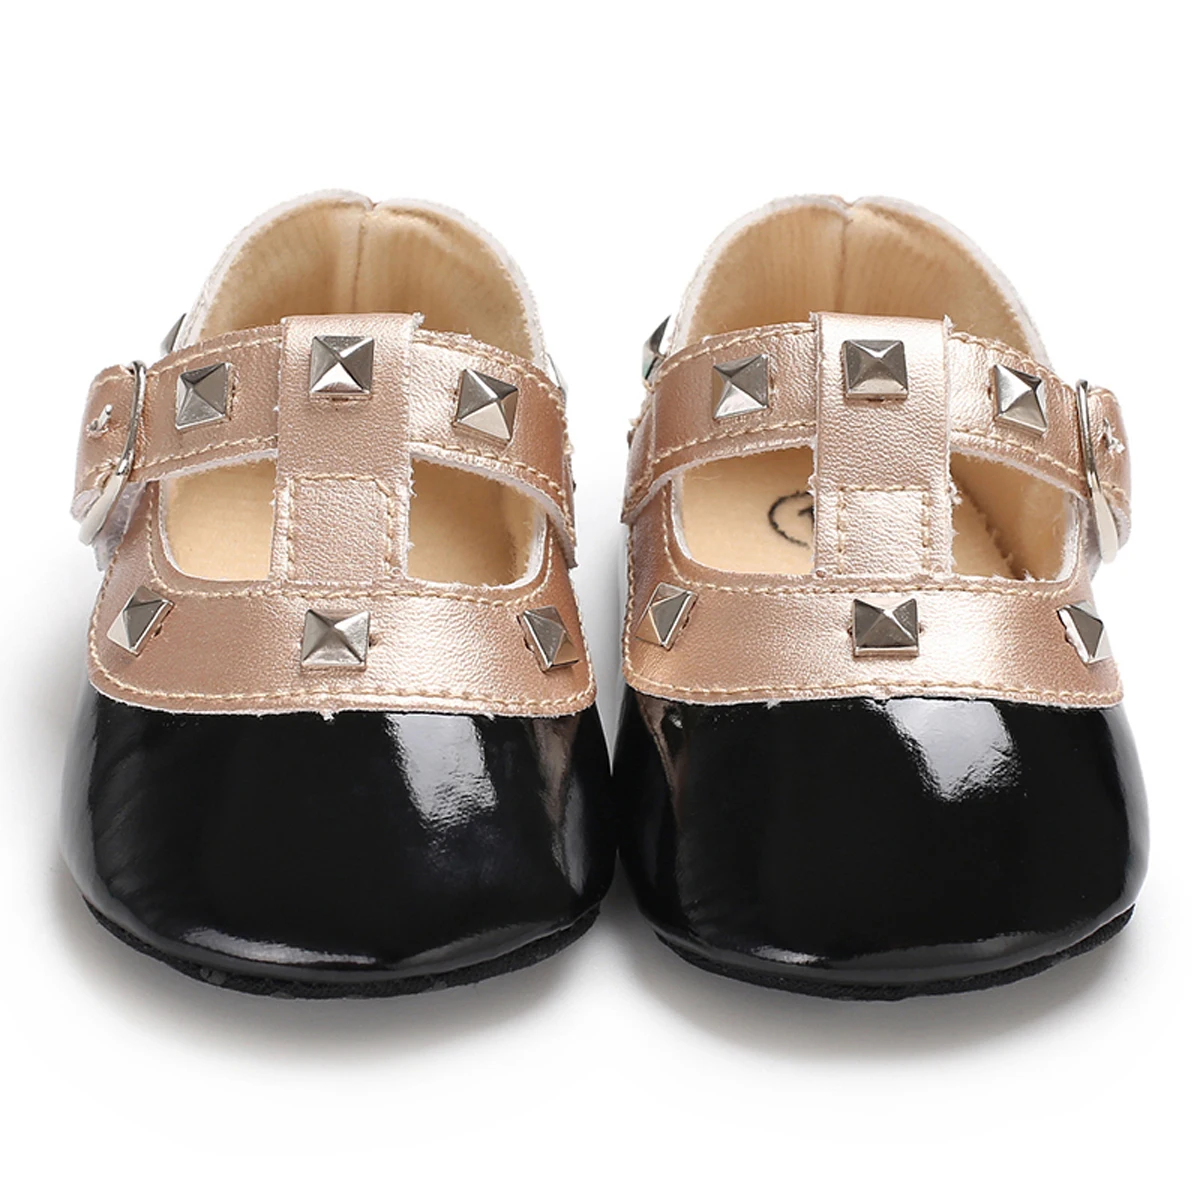 Pudcoco Новорожденный ребенок принцесса детская обувь из искусственной кожи с защитой от скольжения для мальчиков и девочек Bling кроватки коляску обувь бант, мягкая подошва не начавших ходить, на возраст от 0 до 18 месяцев